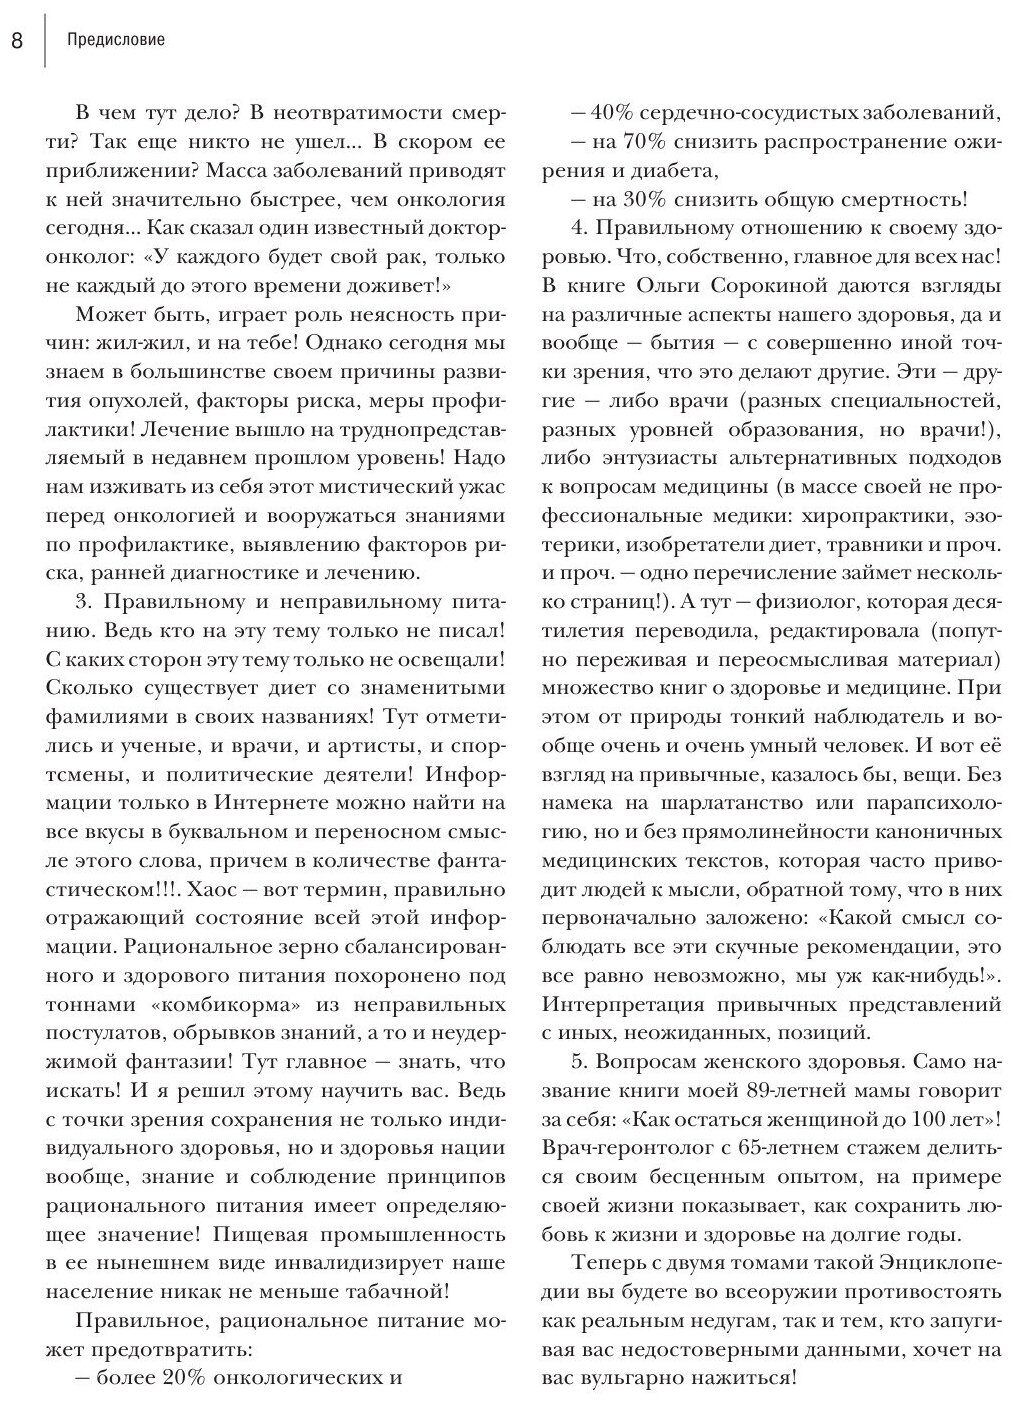 Энциклопедия доктора Мясникова о самом главном. Том 2 - фото №2